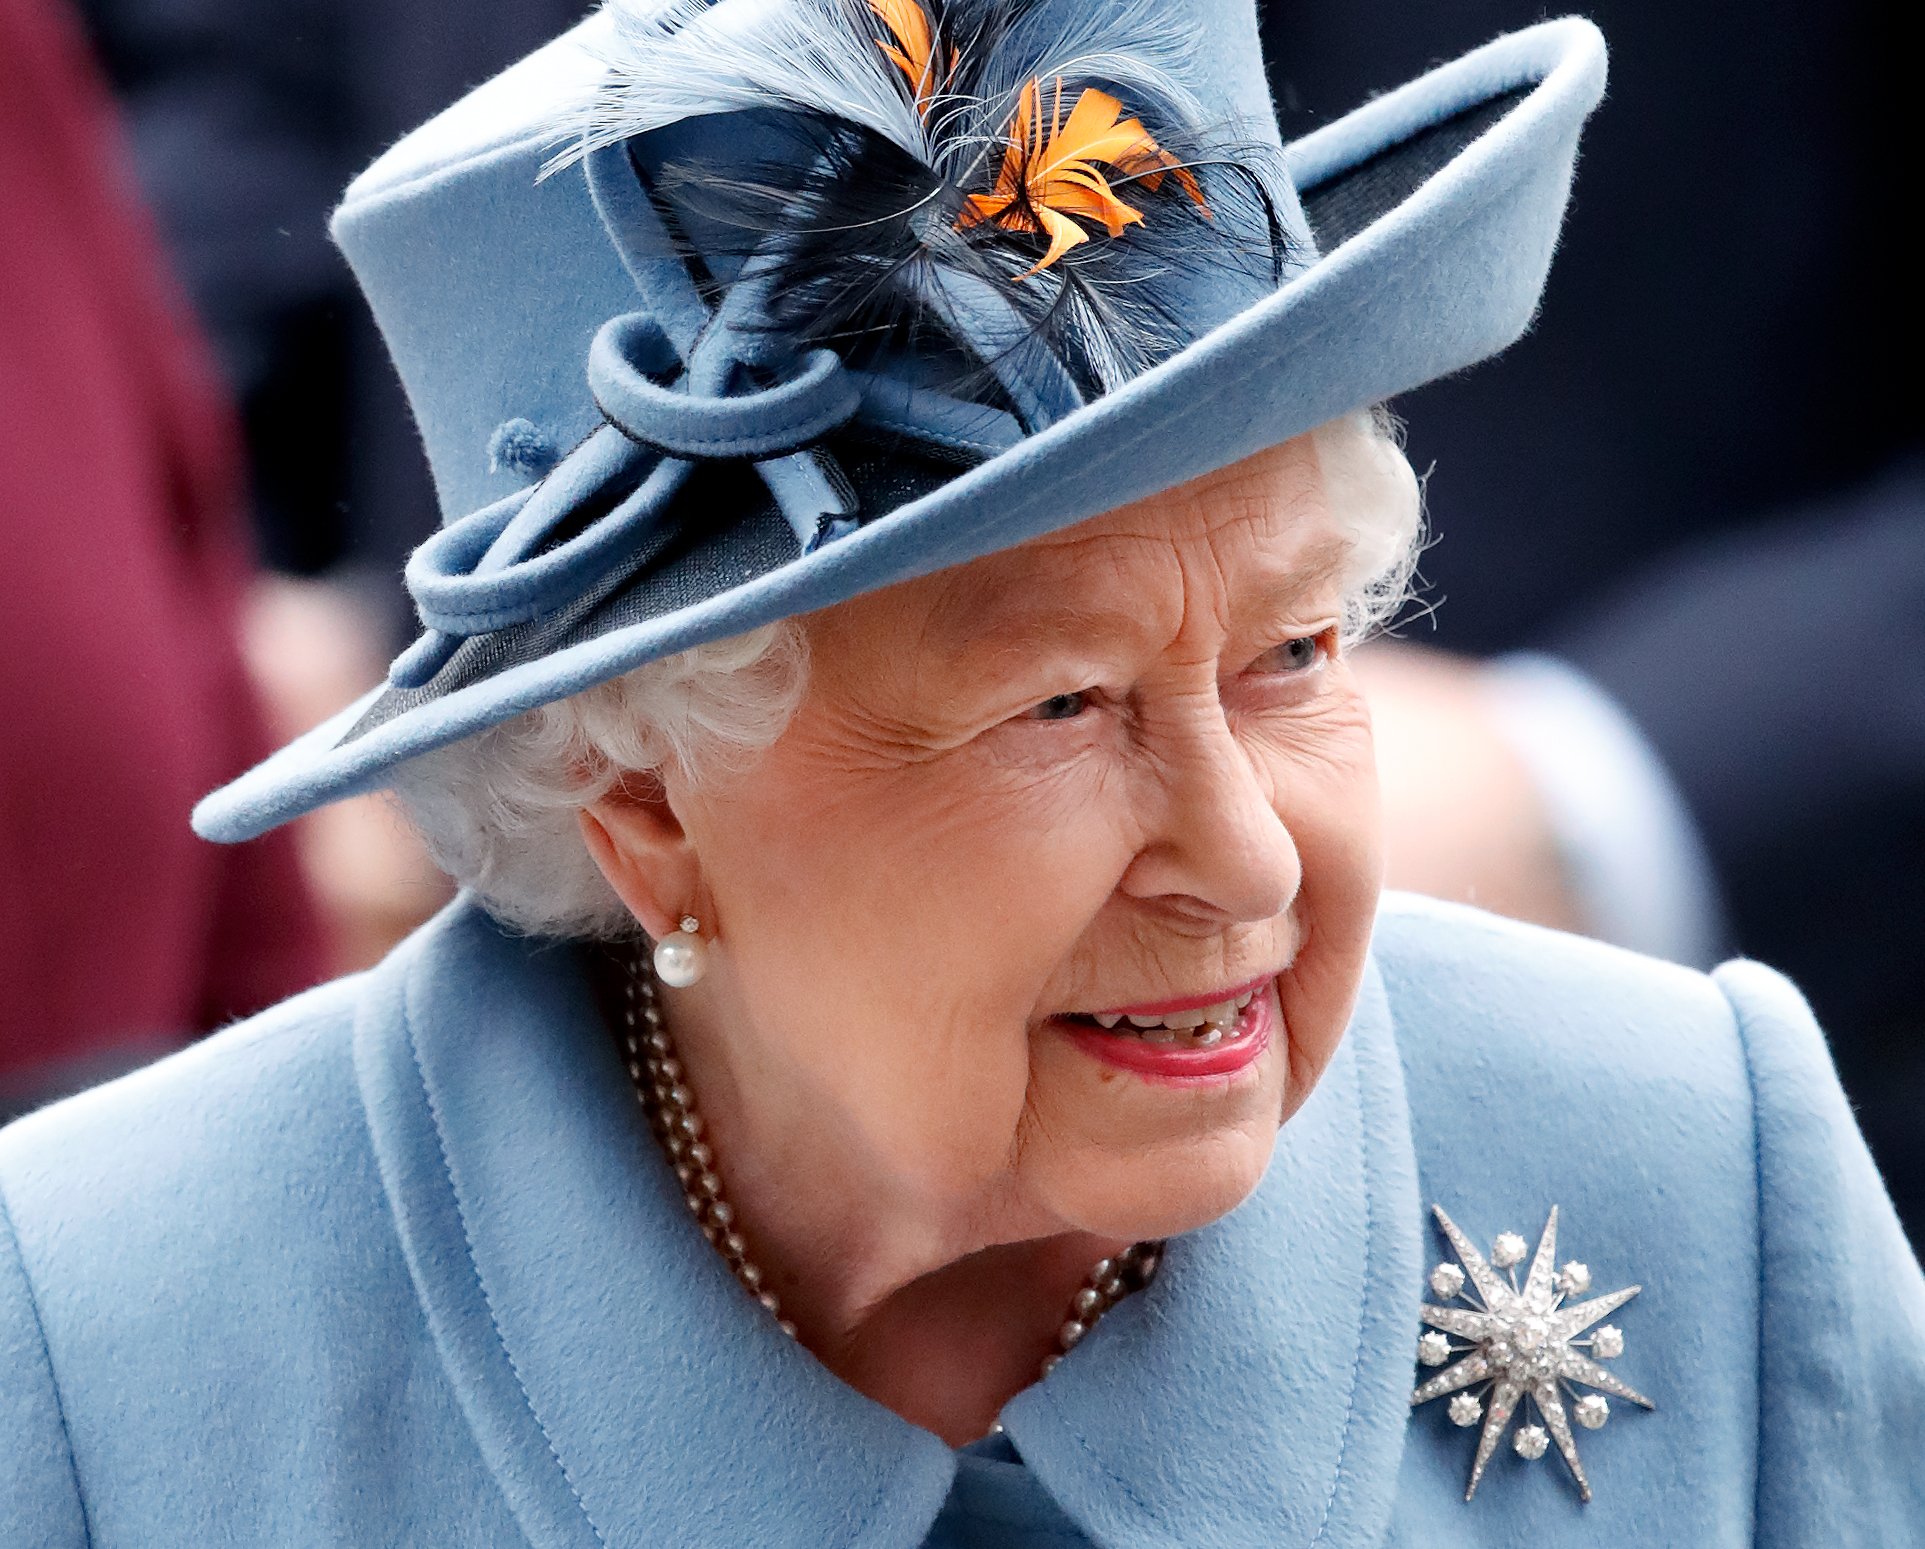 La reina Elizabeth II asiste al Commonwealth Day Service 2020 en la Abadía de Westminster el 9 de marzo de 2020 en Londres, Inglaterra. | Foto: Getty Images